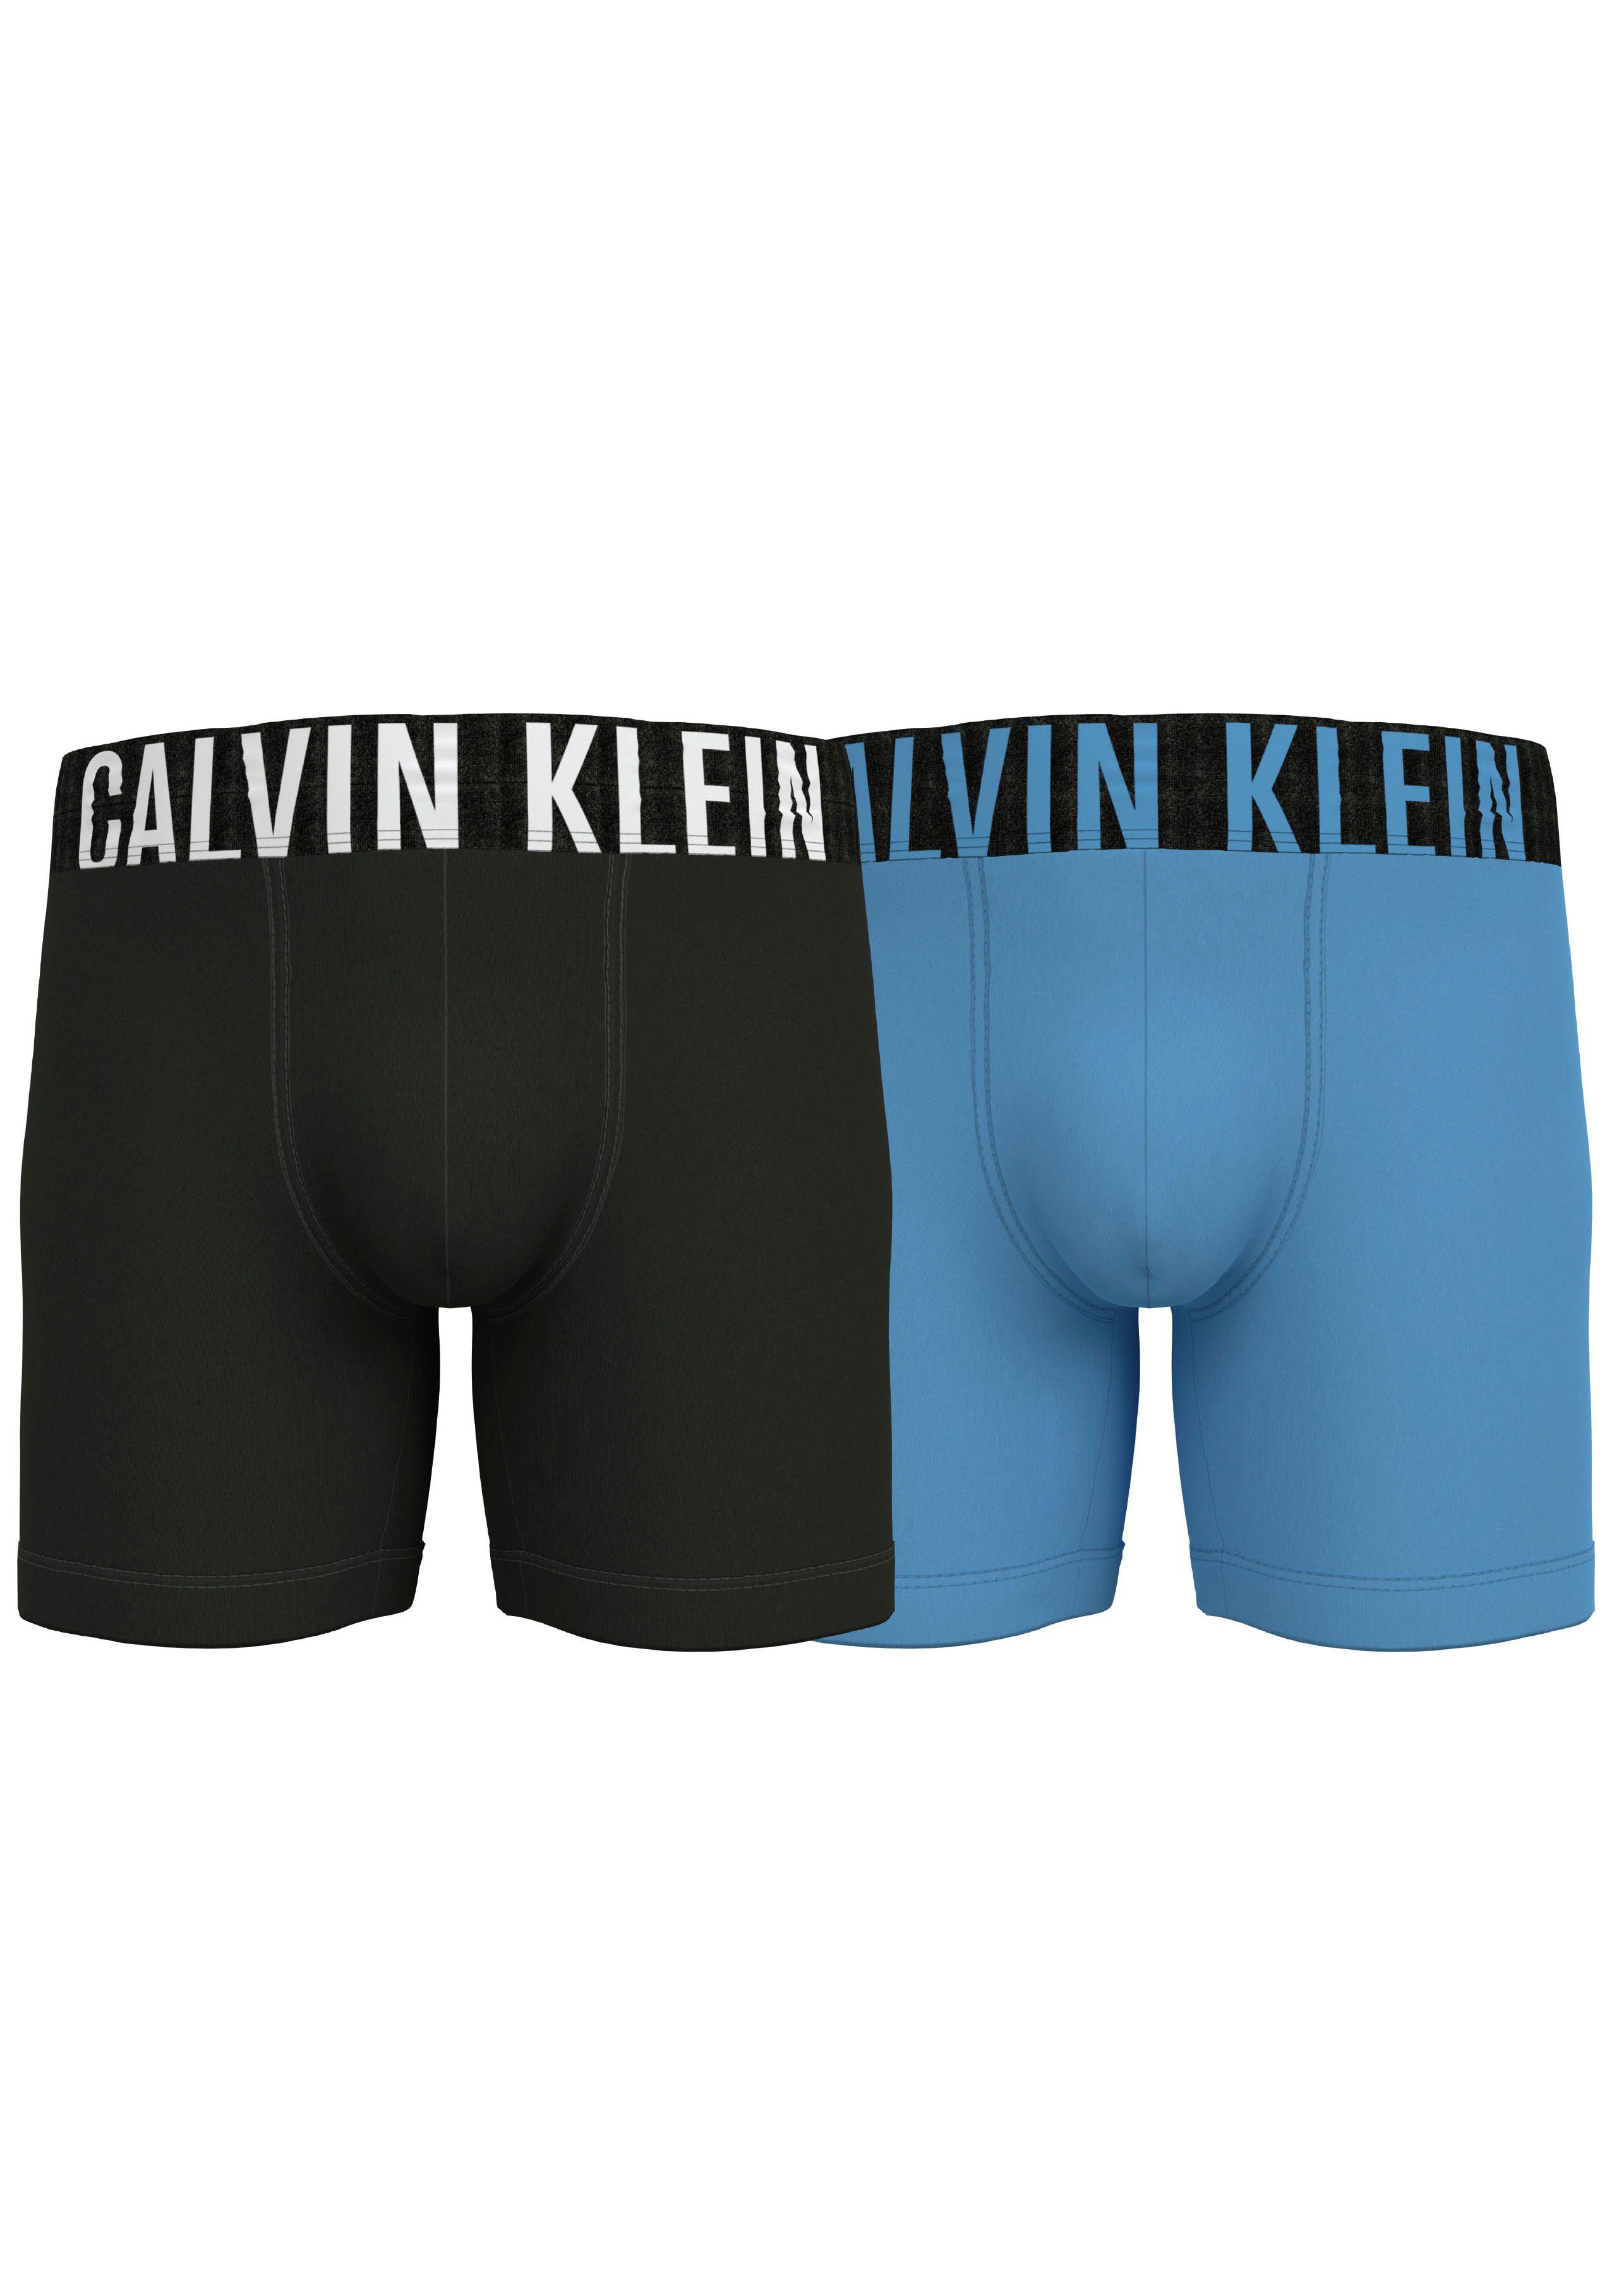 Calvin Klein Boxershorts » Calvin Klein UNDERWEAR online kaufen | OTTO